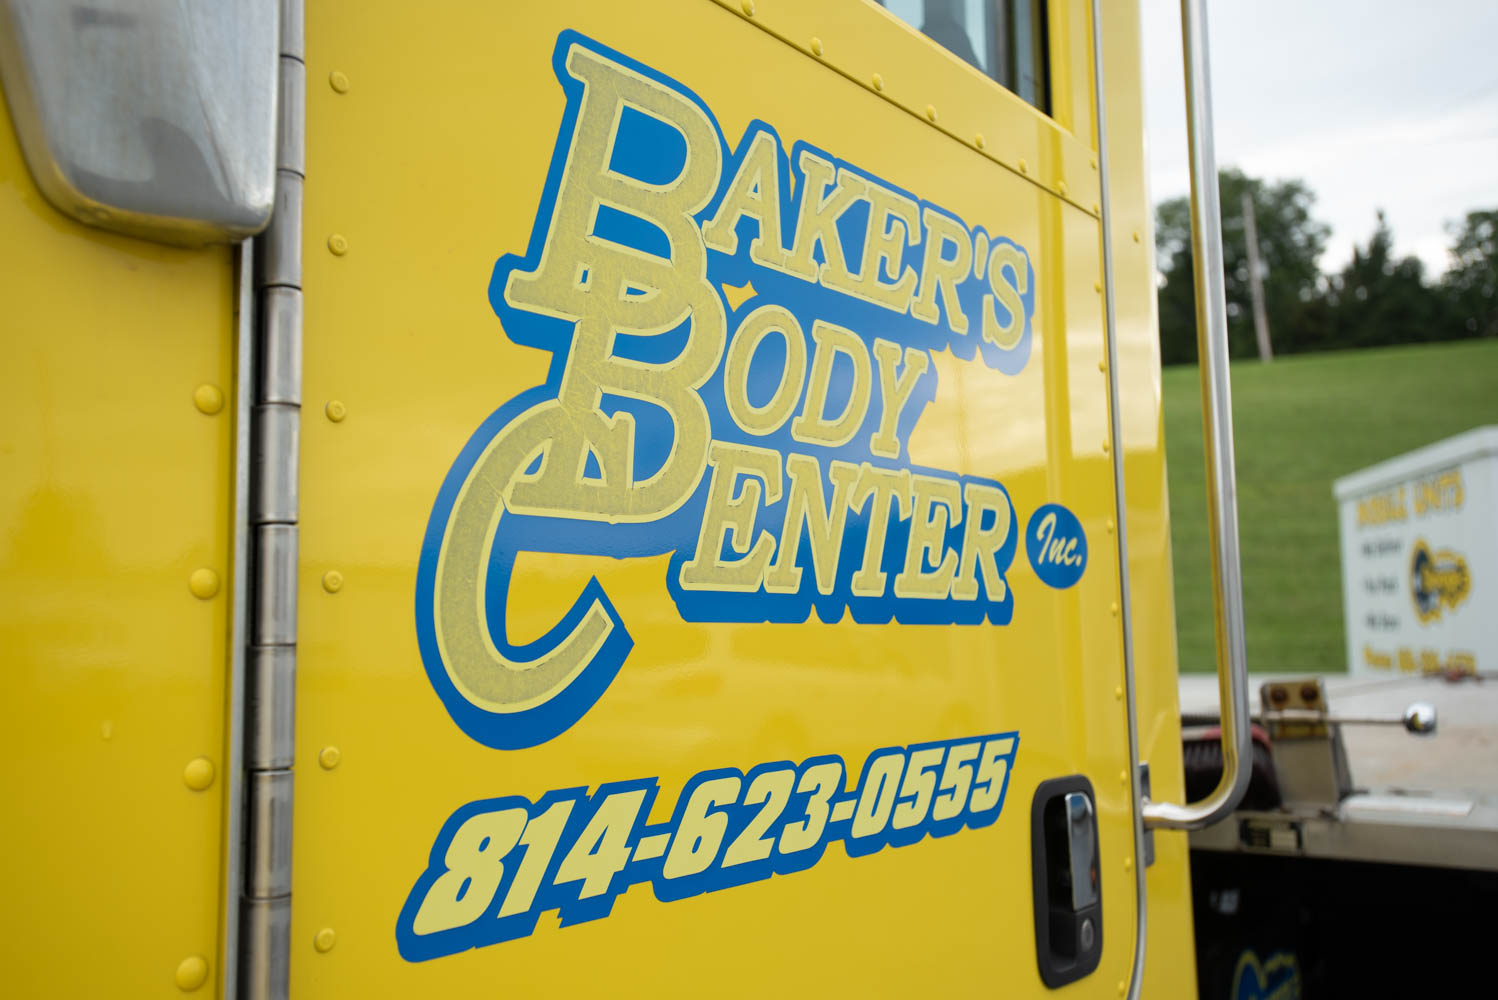 Baker's Body Center logo on rollback truck